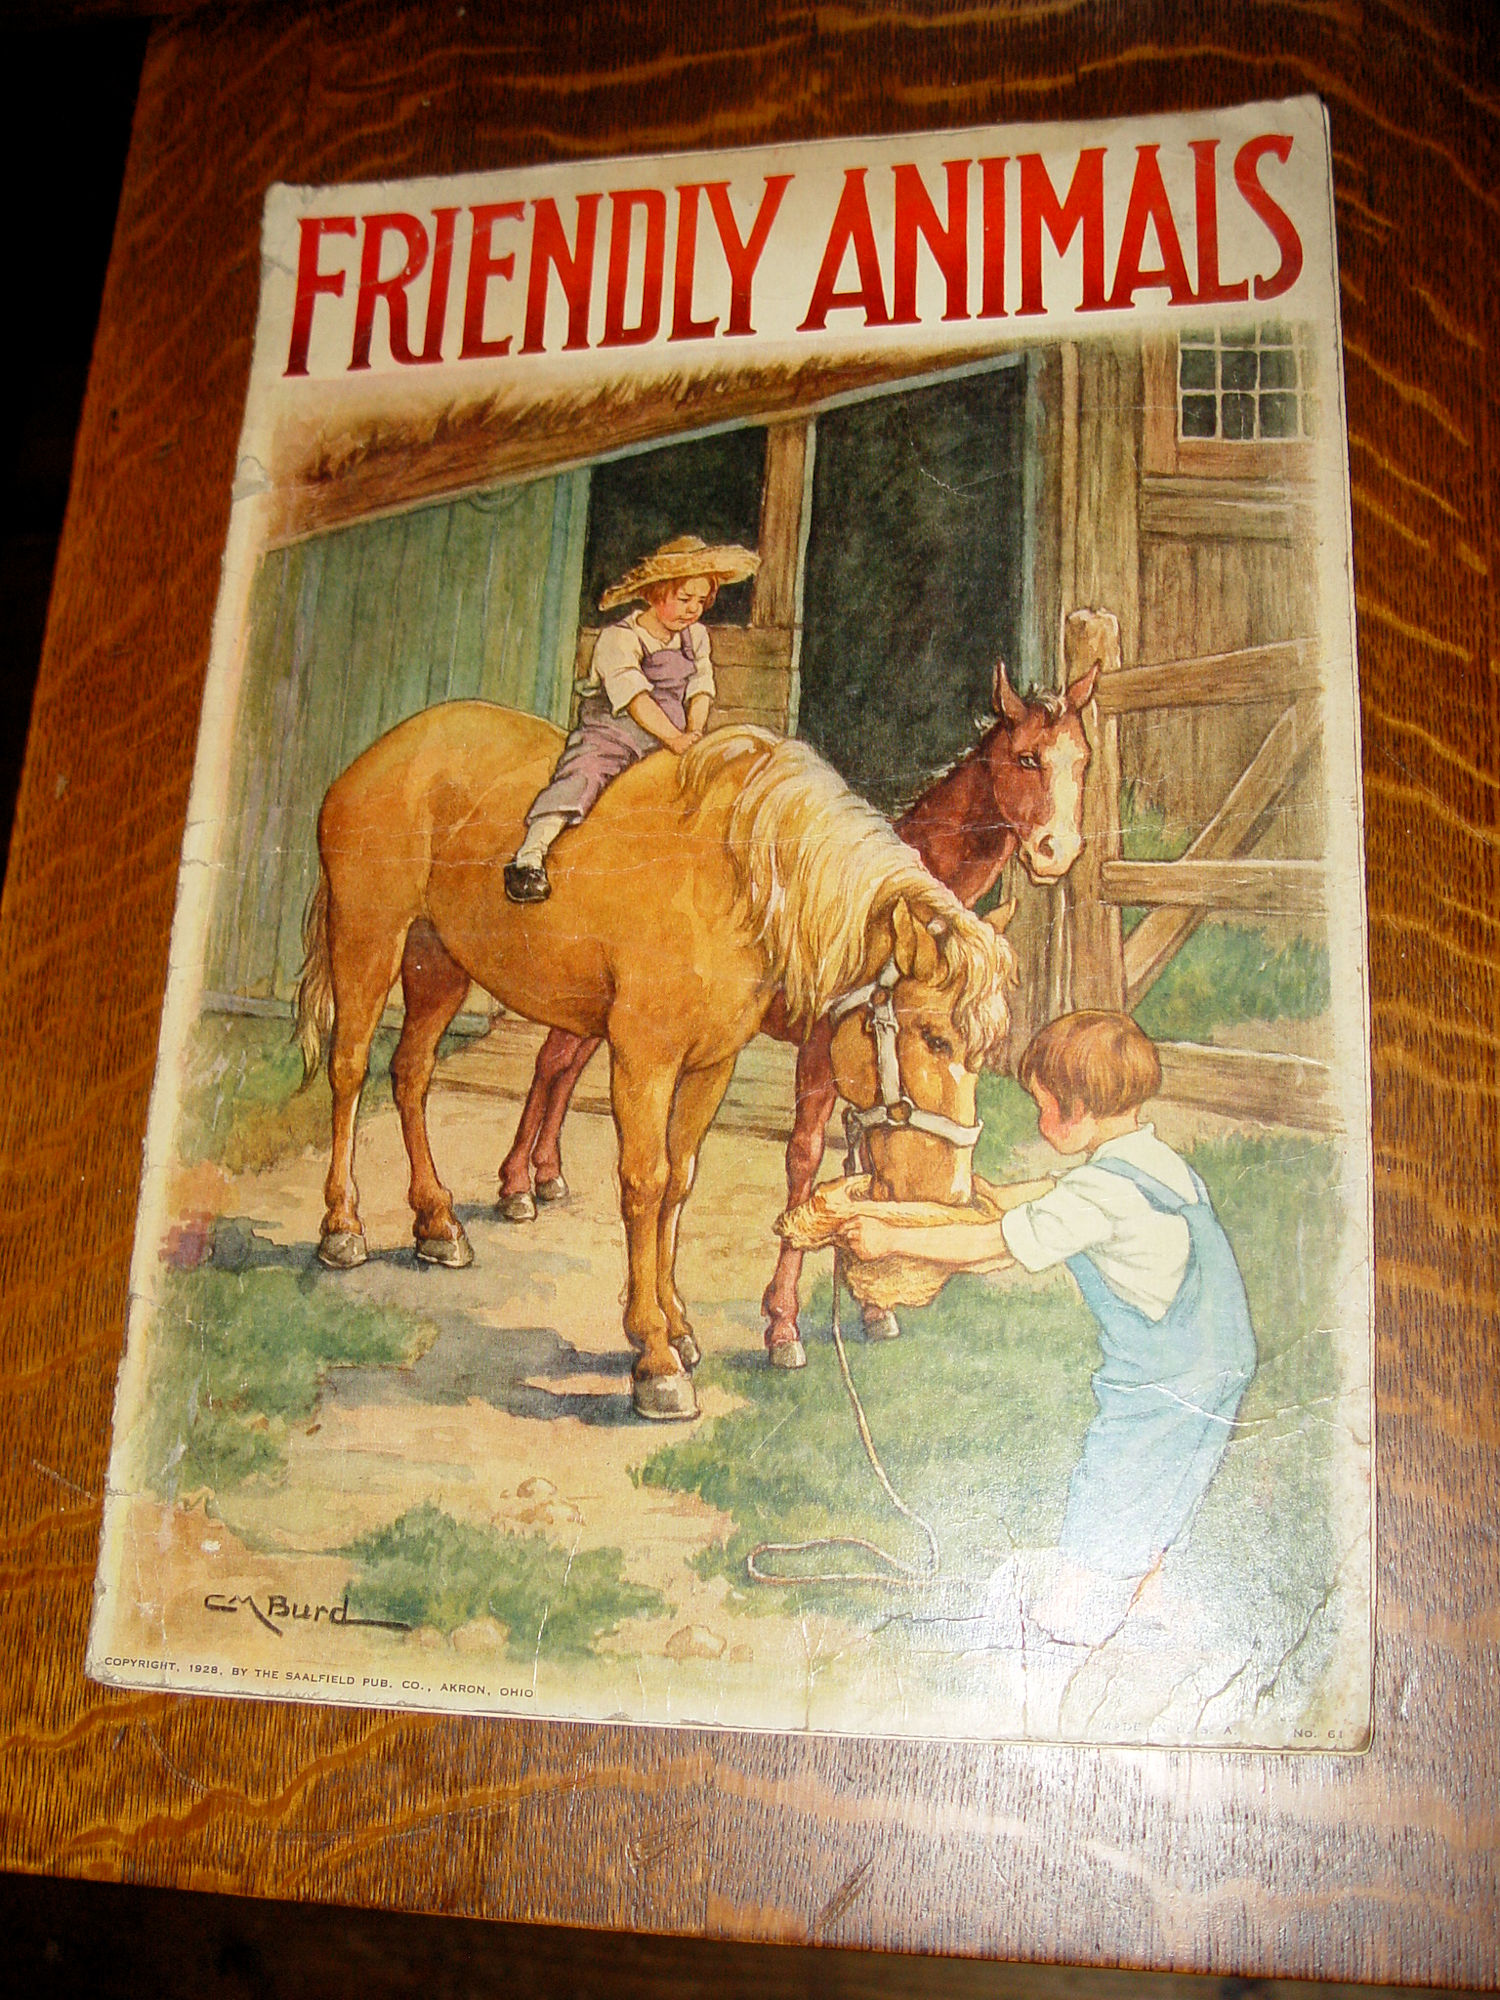 FRIENDLY ANIMALS, Vintage Children's Paperback by
                CM Burd (1928)